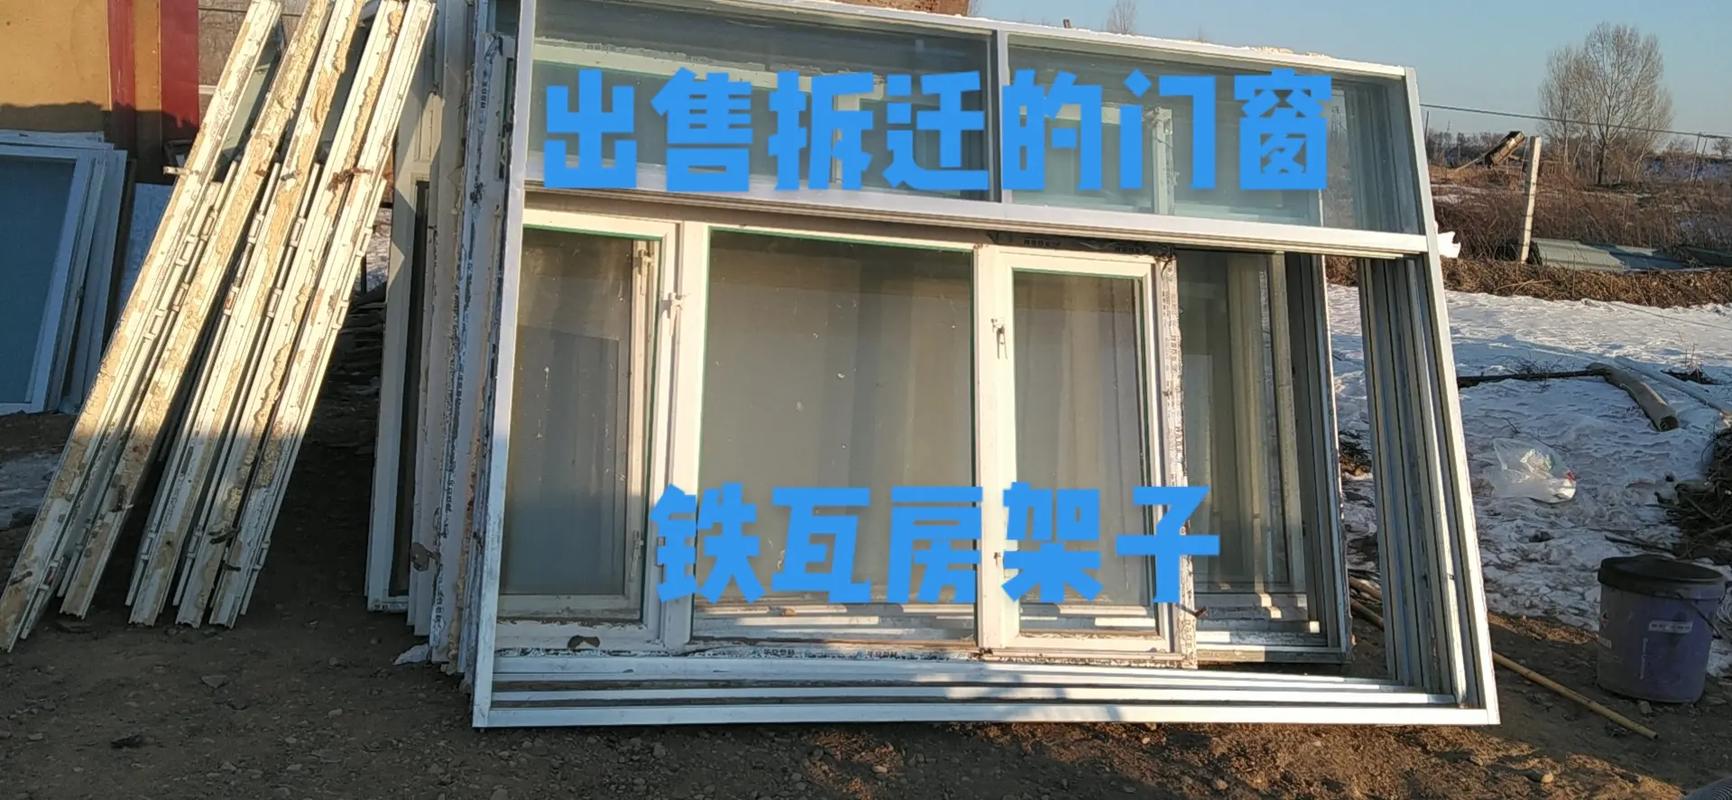 出售自己家拆迁的塑钢门窗,铝合金门窗,铁瓦,房架子,铝合金门 - 抖音